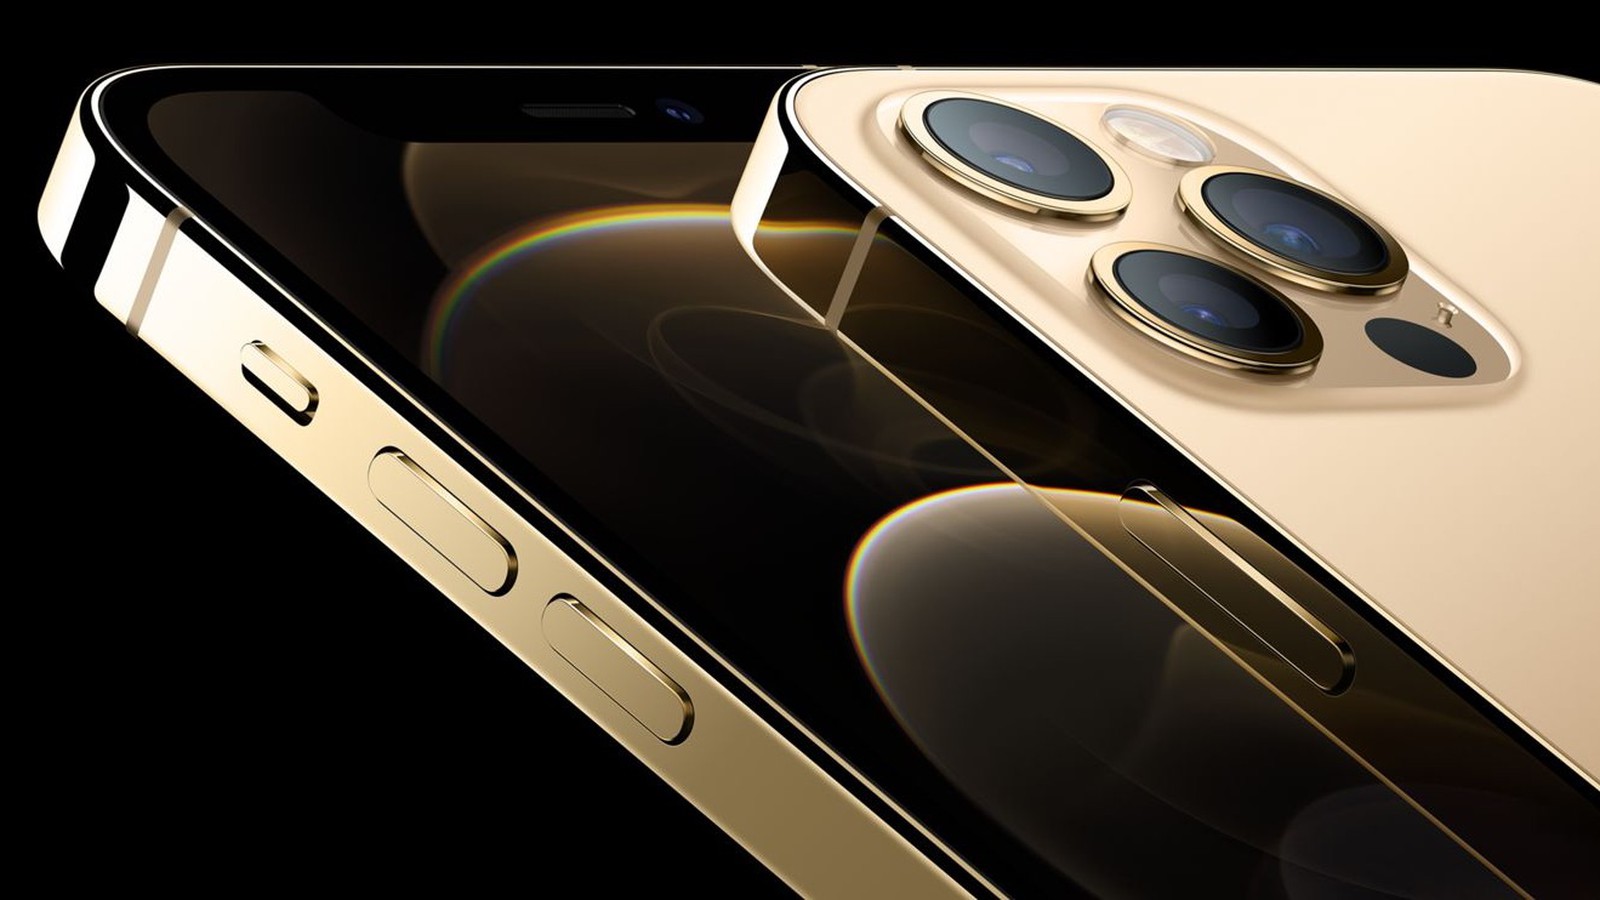 iPhone 12 Pro Max 當選 2021 年度最佳智慧手機